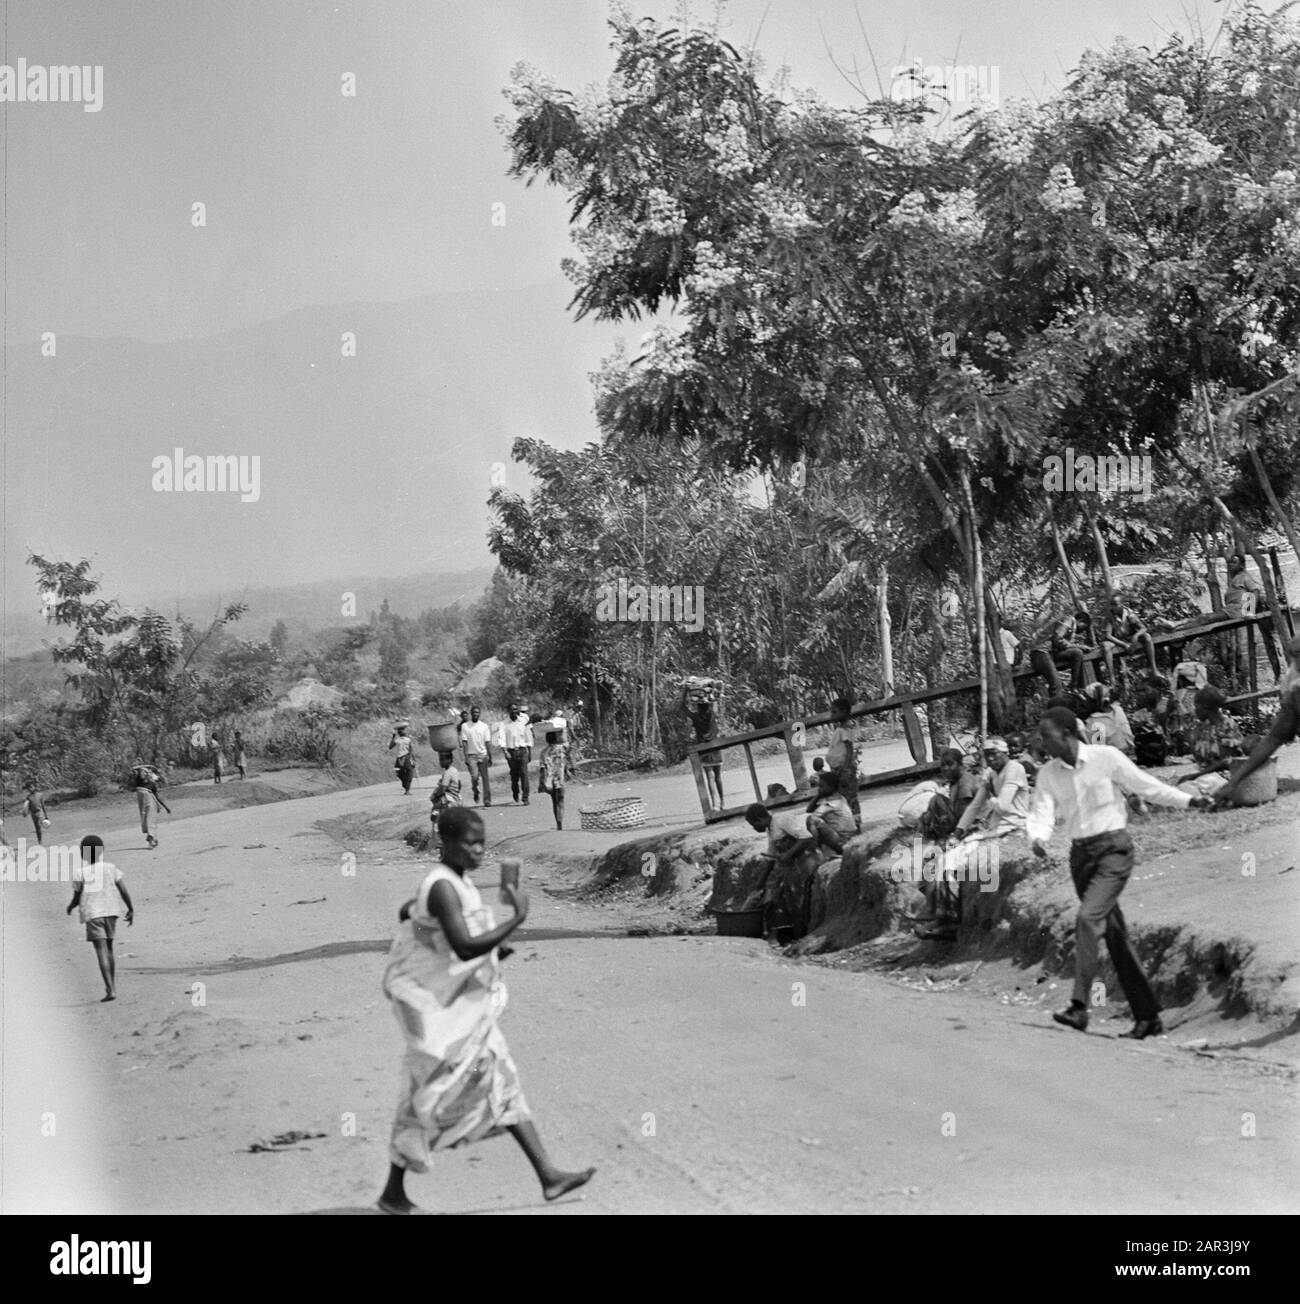 Zaire (früher Belgischer Kongo) Straße auf dem Land; Menschen auf der Straße Datum: 24. Oktober 1973 Ort: Kongo, Zaire Schlüsselwörter: Straßenrand, Straßenhandel, Straßen Stockfoto